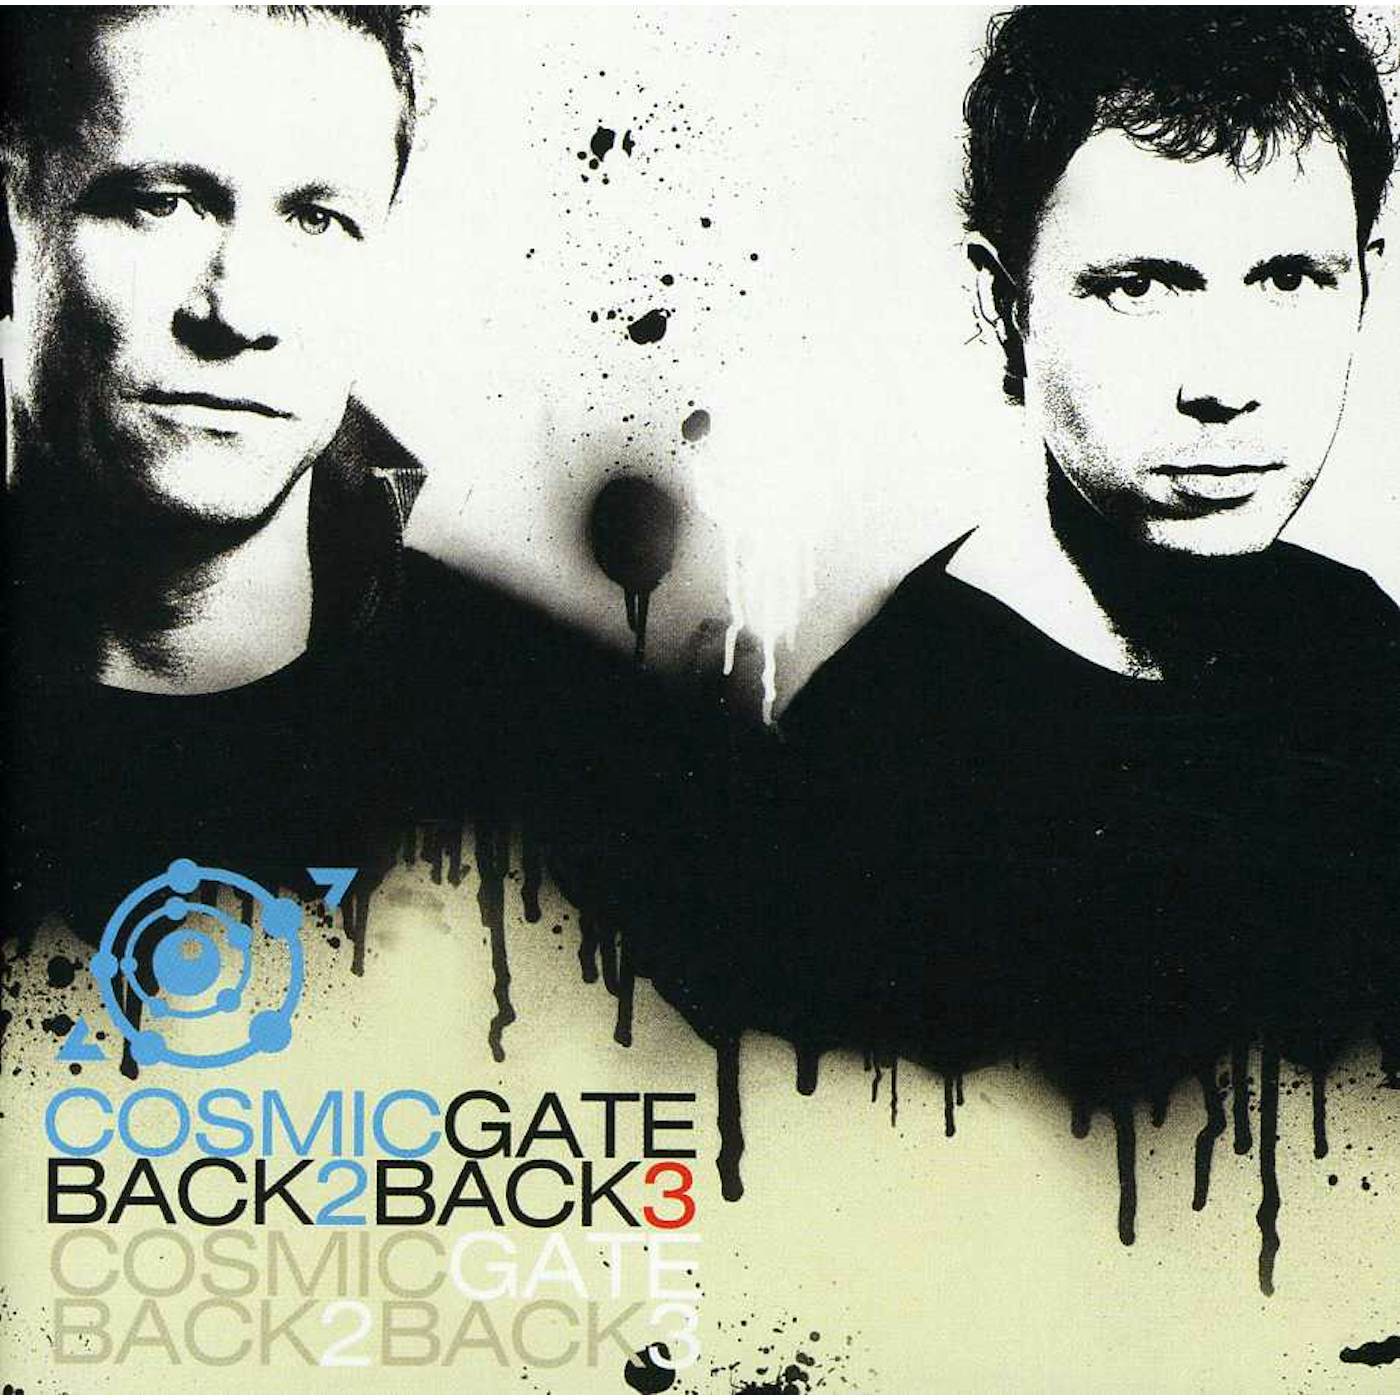 Cosmic Gate BACK 2 BACK 3 CD